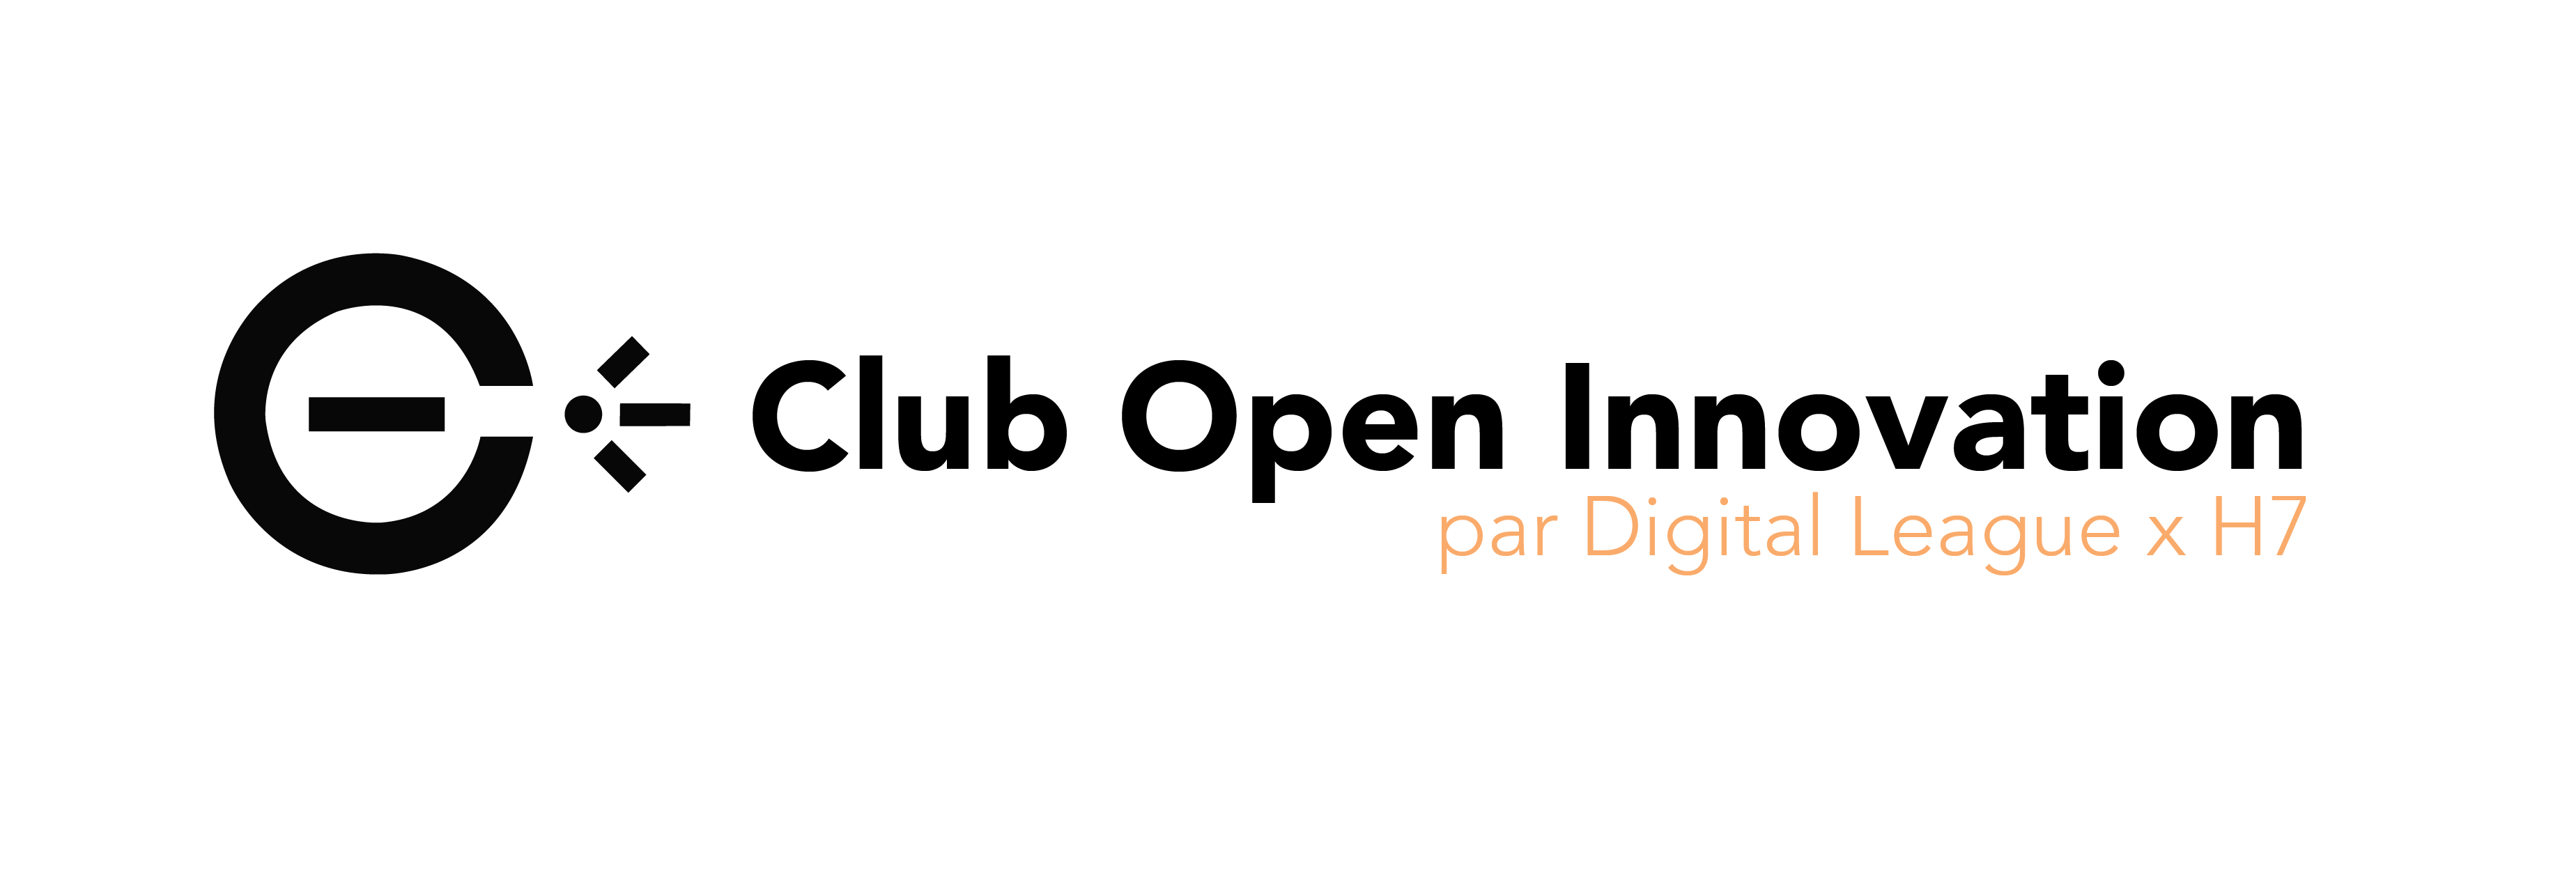 Club Open Innovation - Digital League x H7